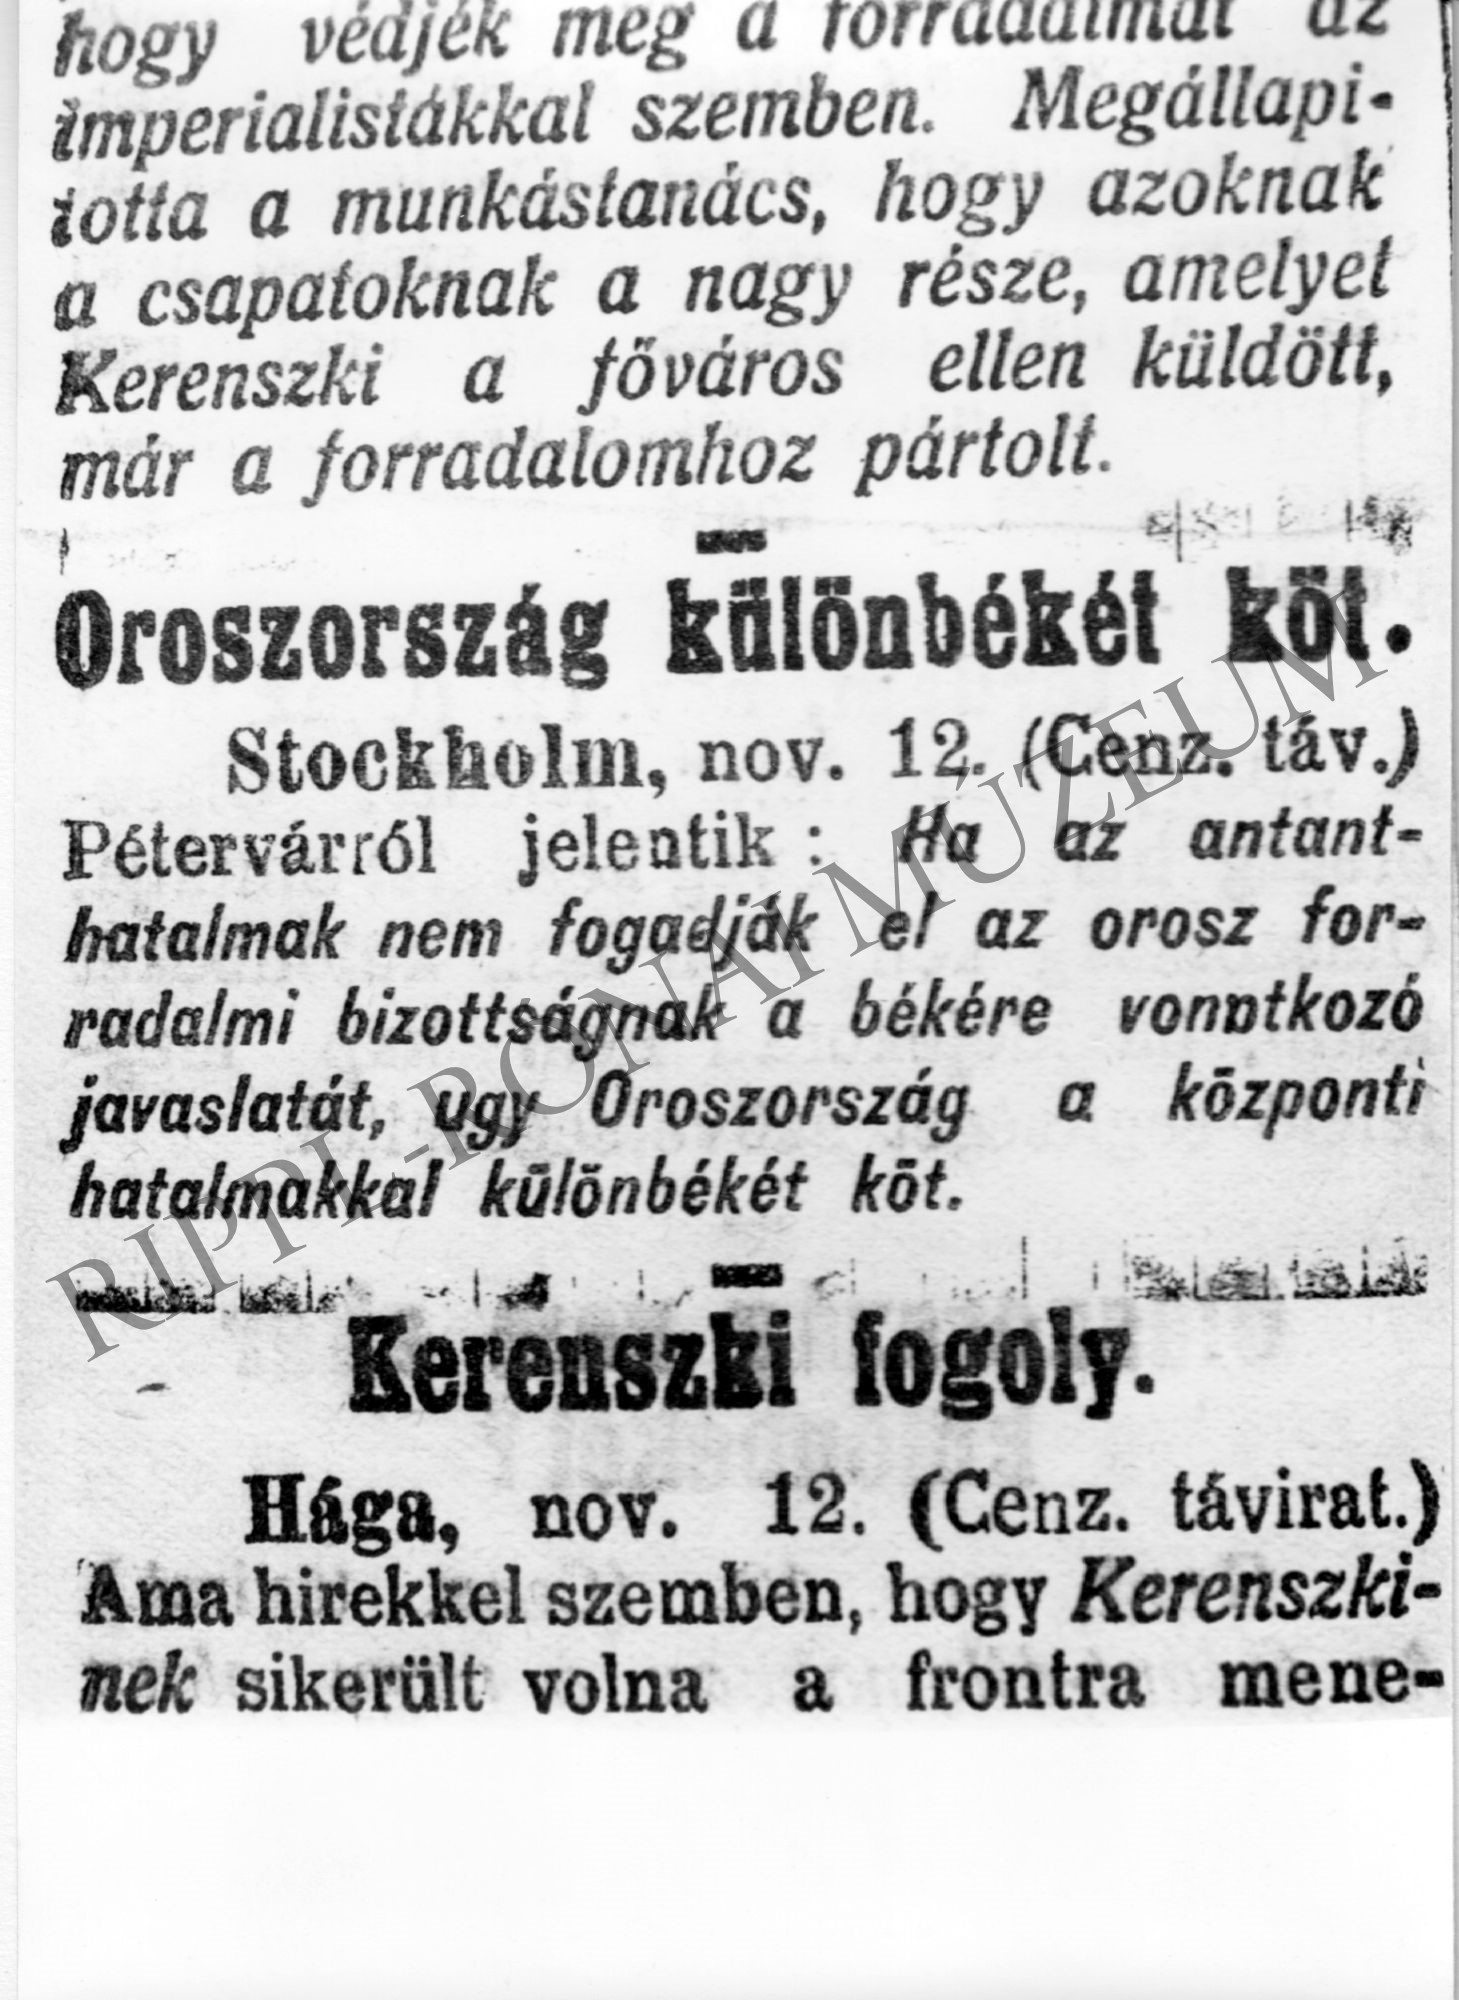 A Somogyvármegye c. lap cikke - 1917. november 13. "Oroszország különbékét kött" (Rippl-Rónai Múzeum CC BY-NC-SA)